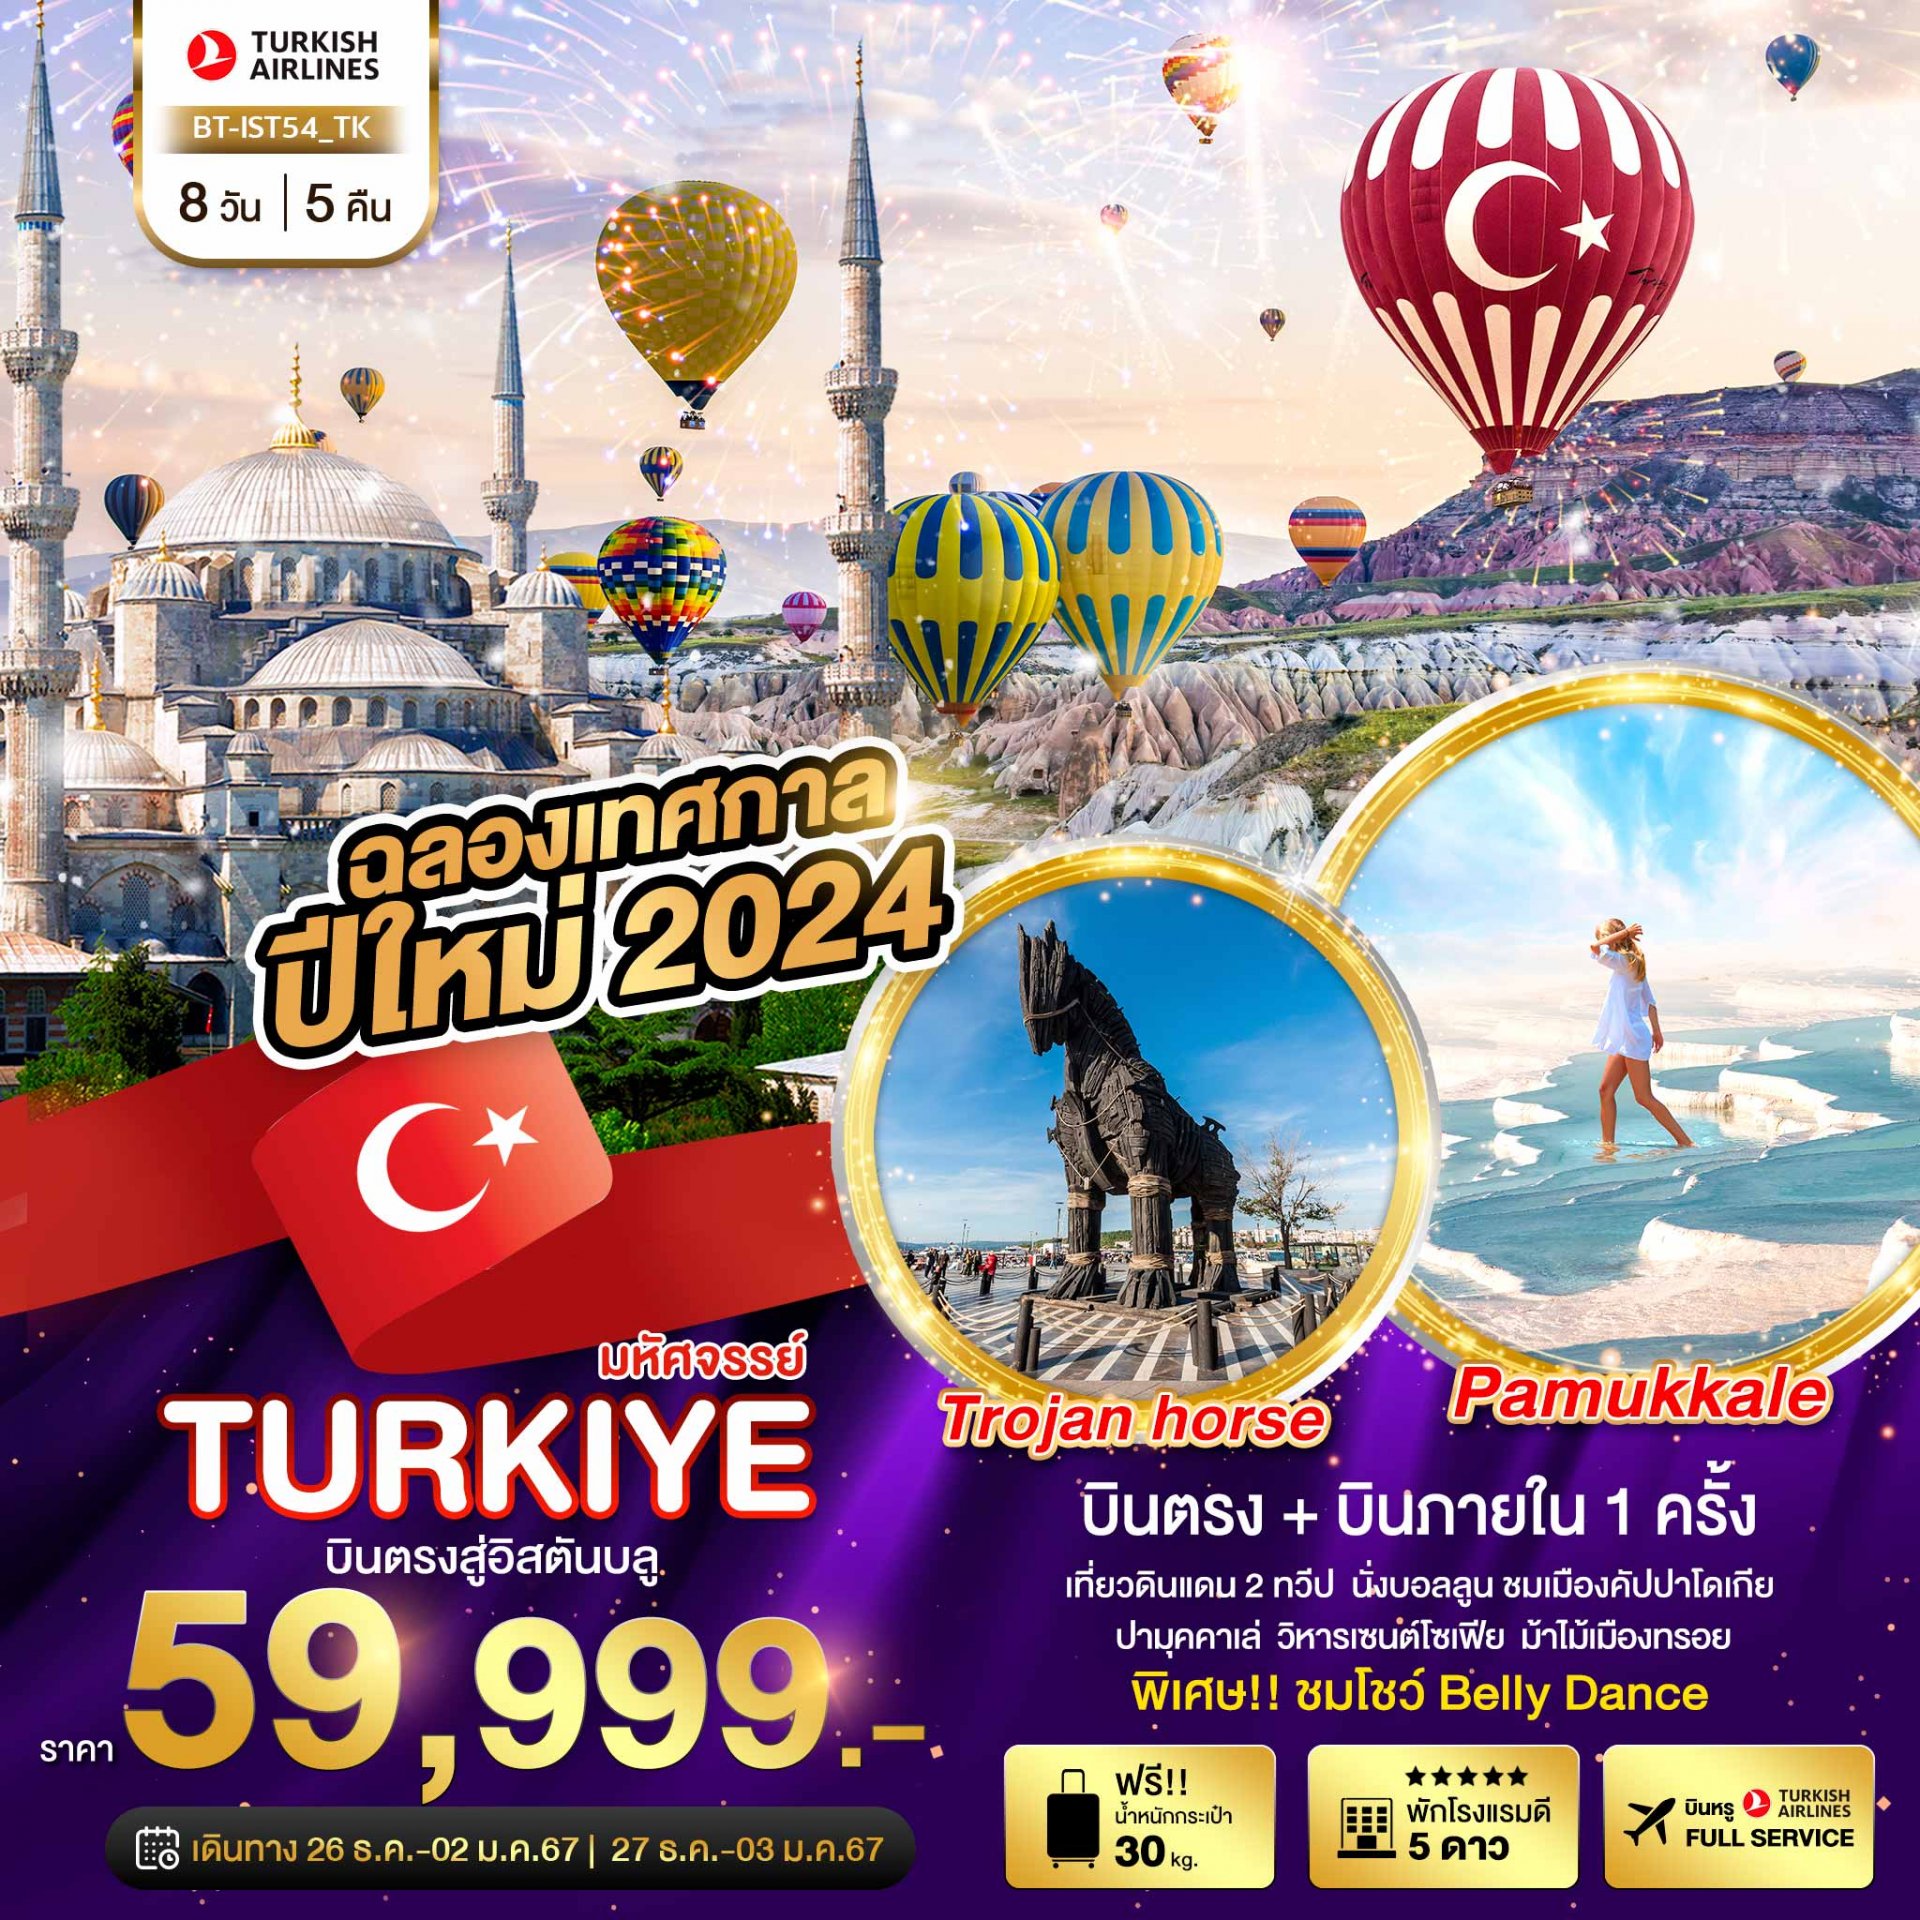 ทัวร์ตุรกี : มหัศจรรย์...TURKIYE บินตรงสู่อิสตันบูล NEW YEARS 2024